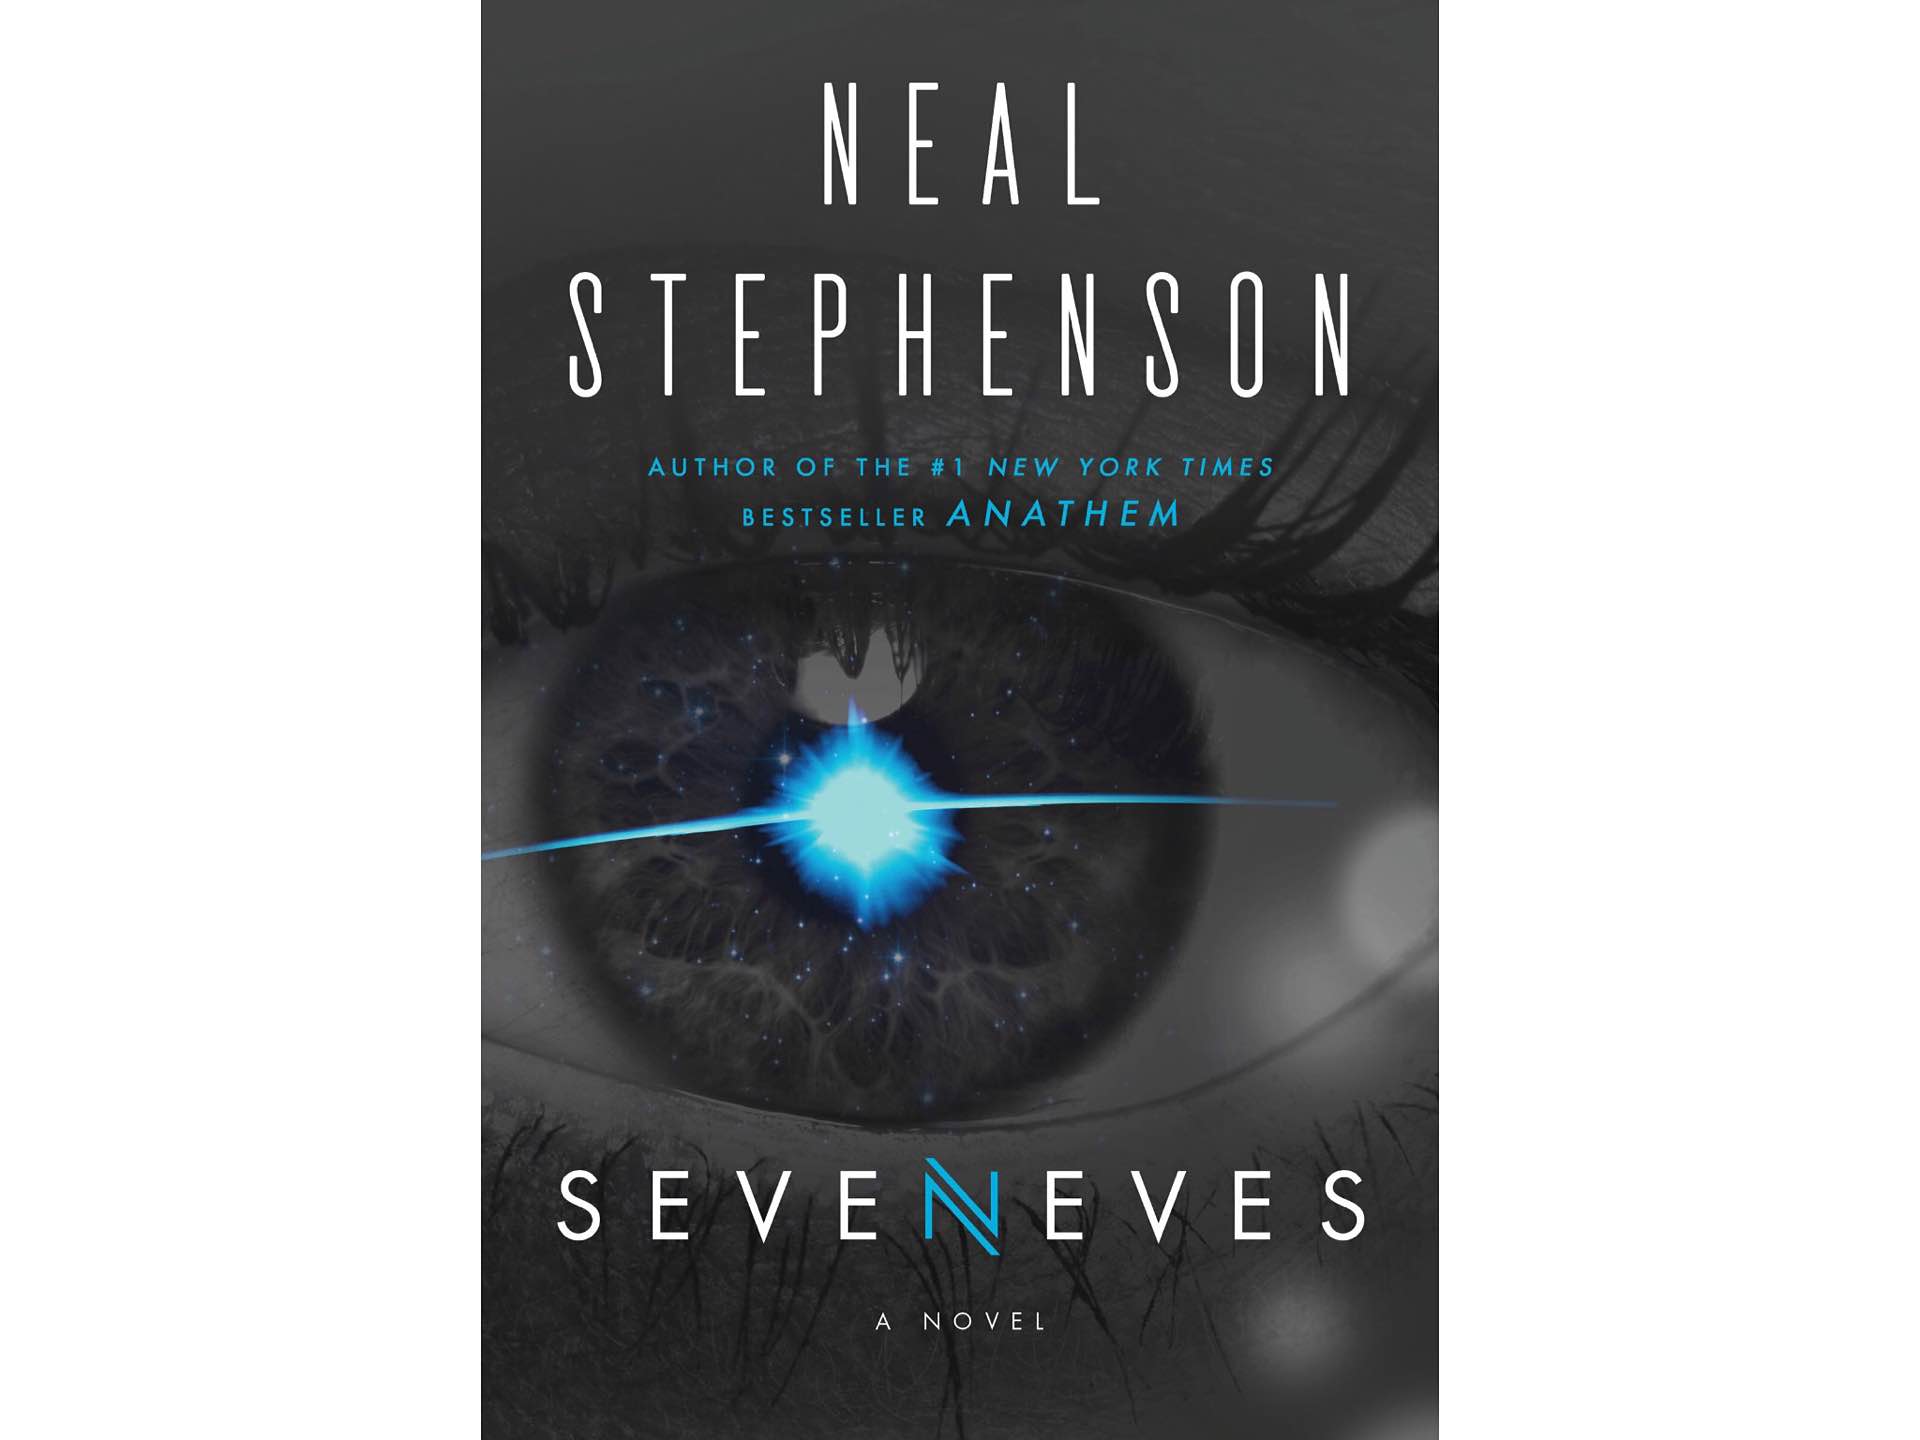 Seveneves by Neal Stephenson.